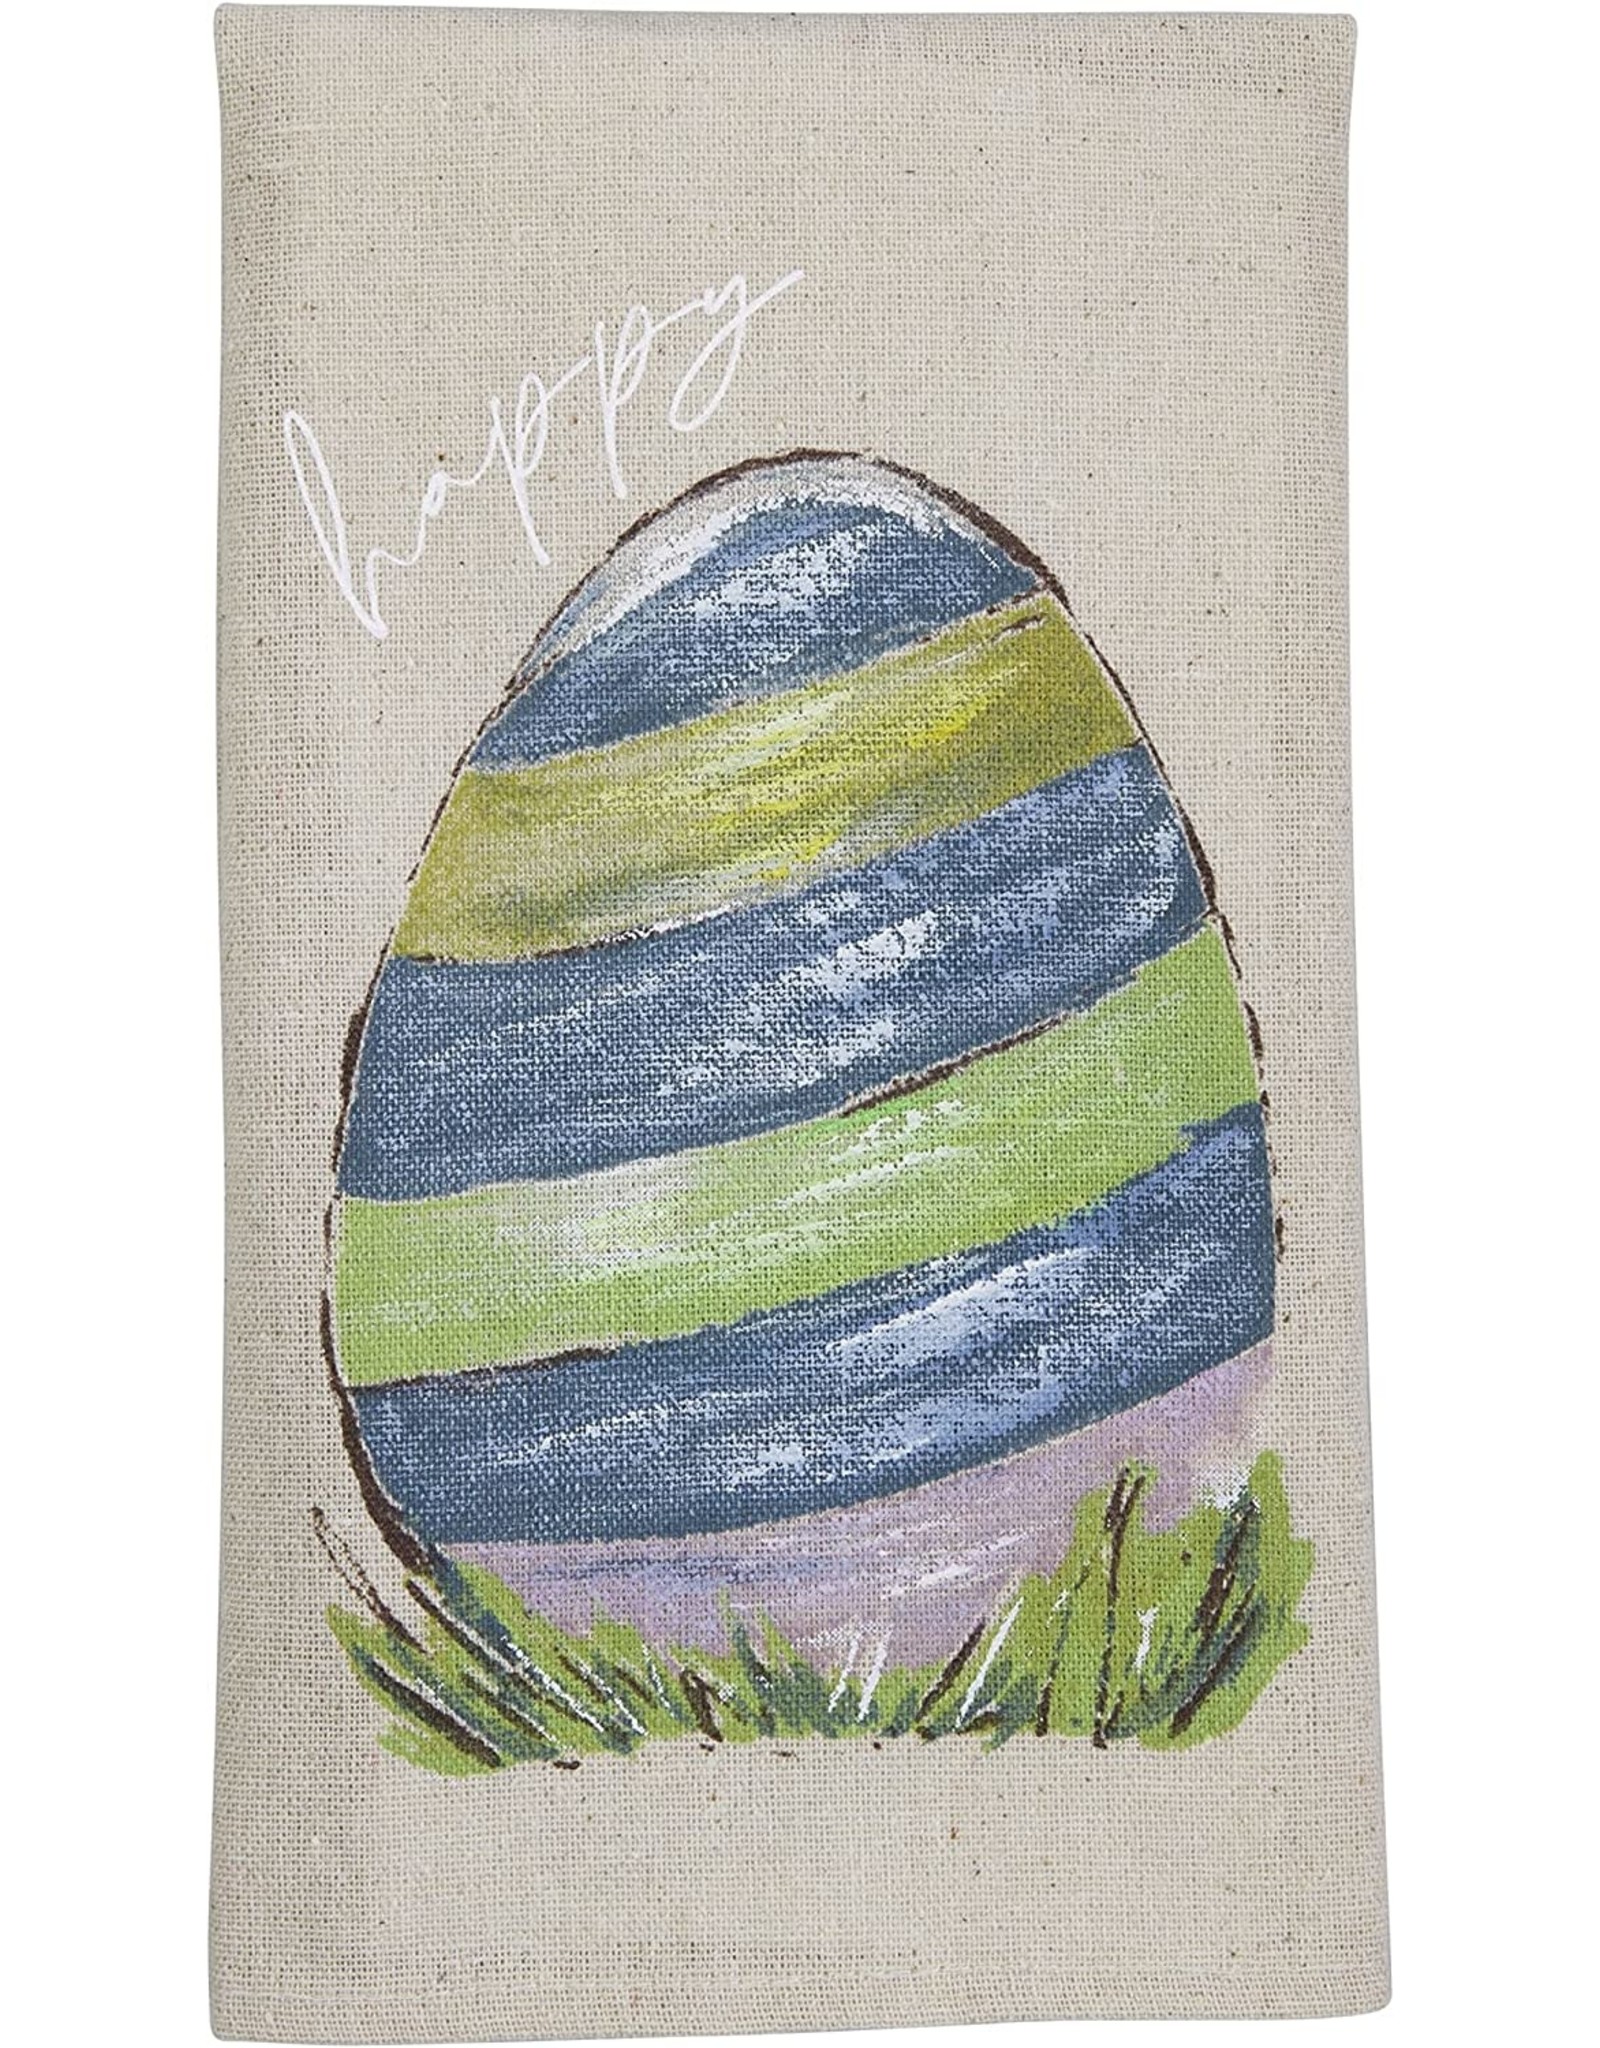 Mudpie Hand-Painted Egg Easter Tea Towel